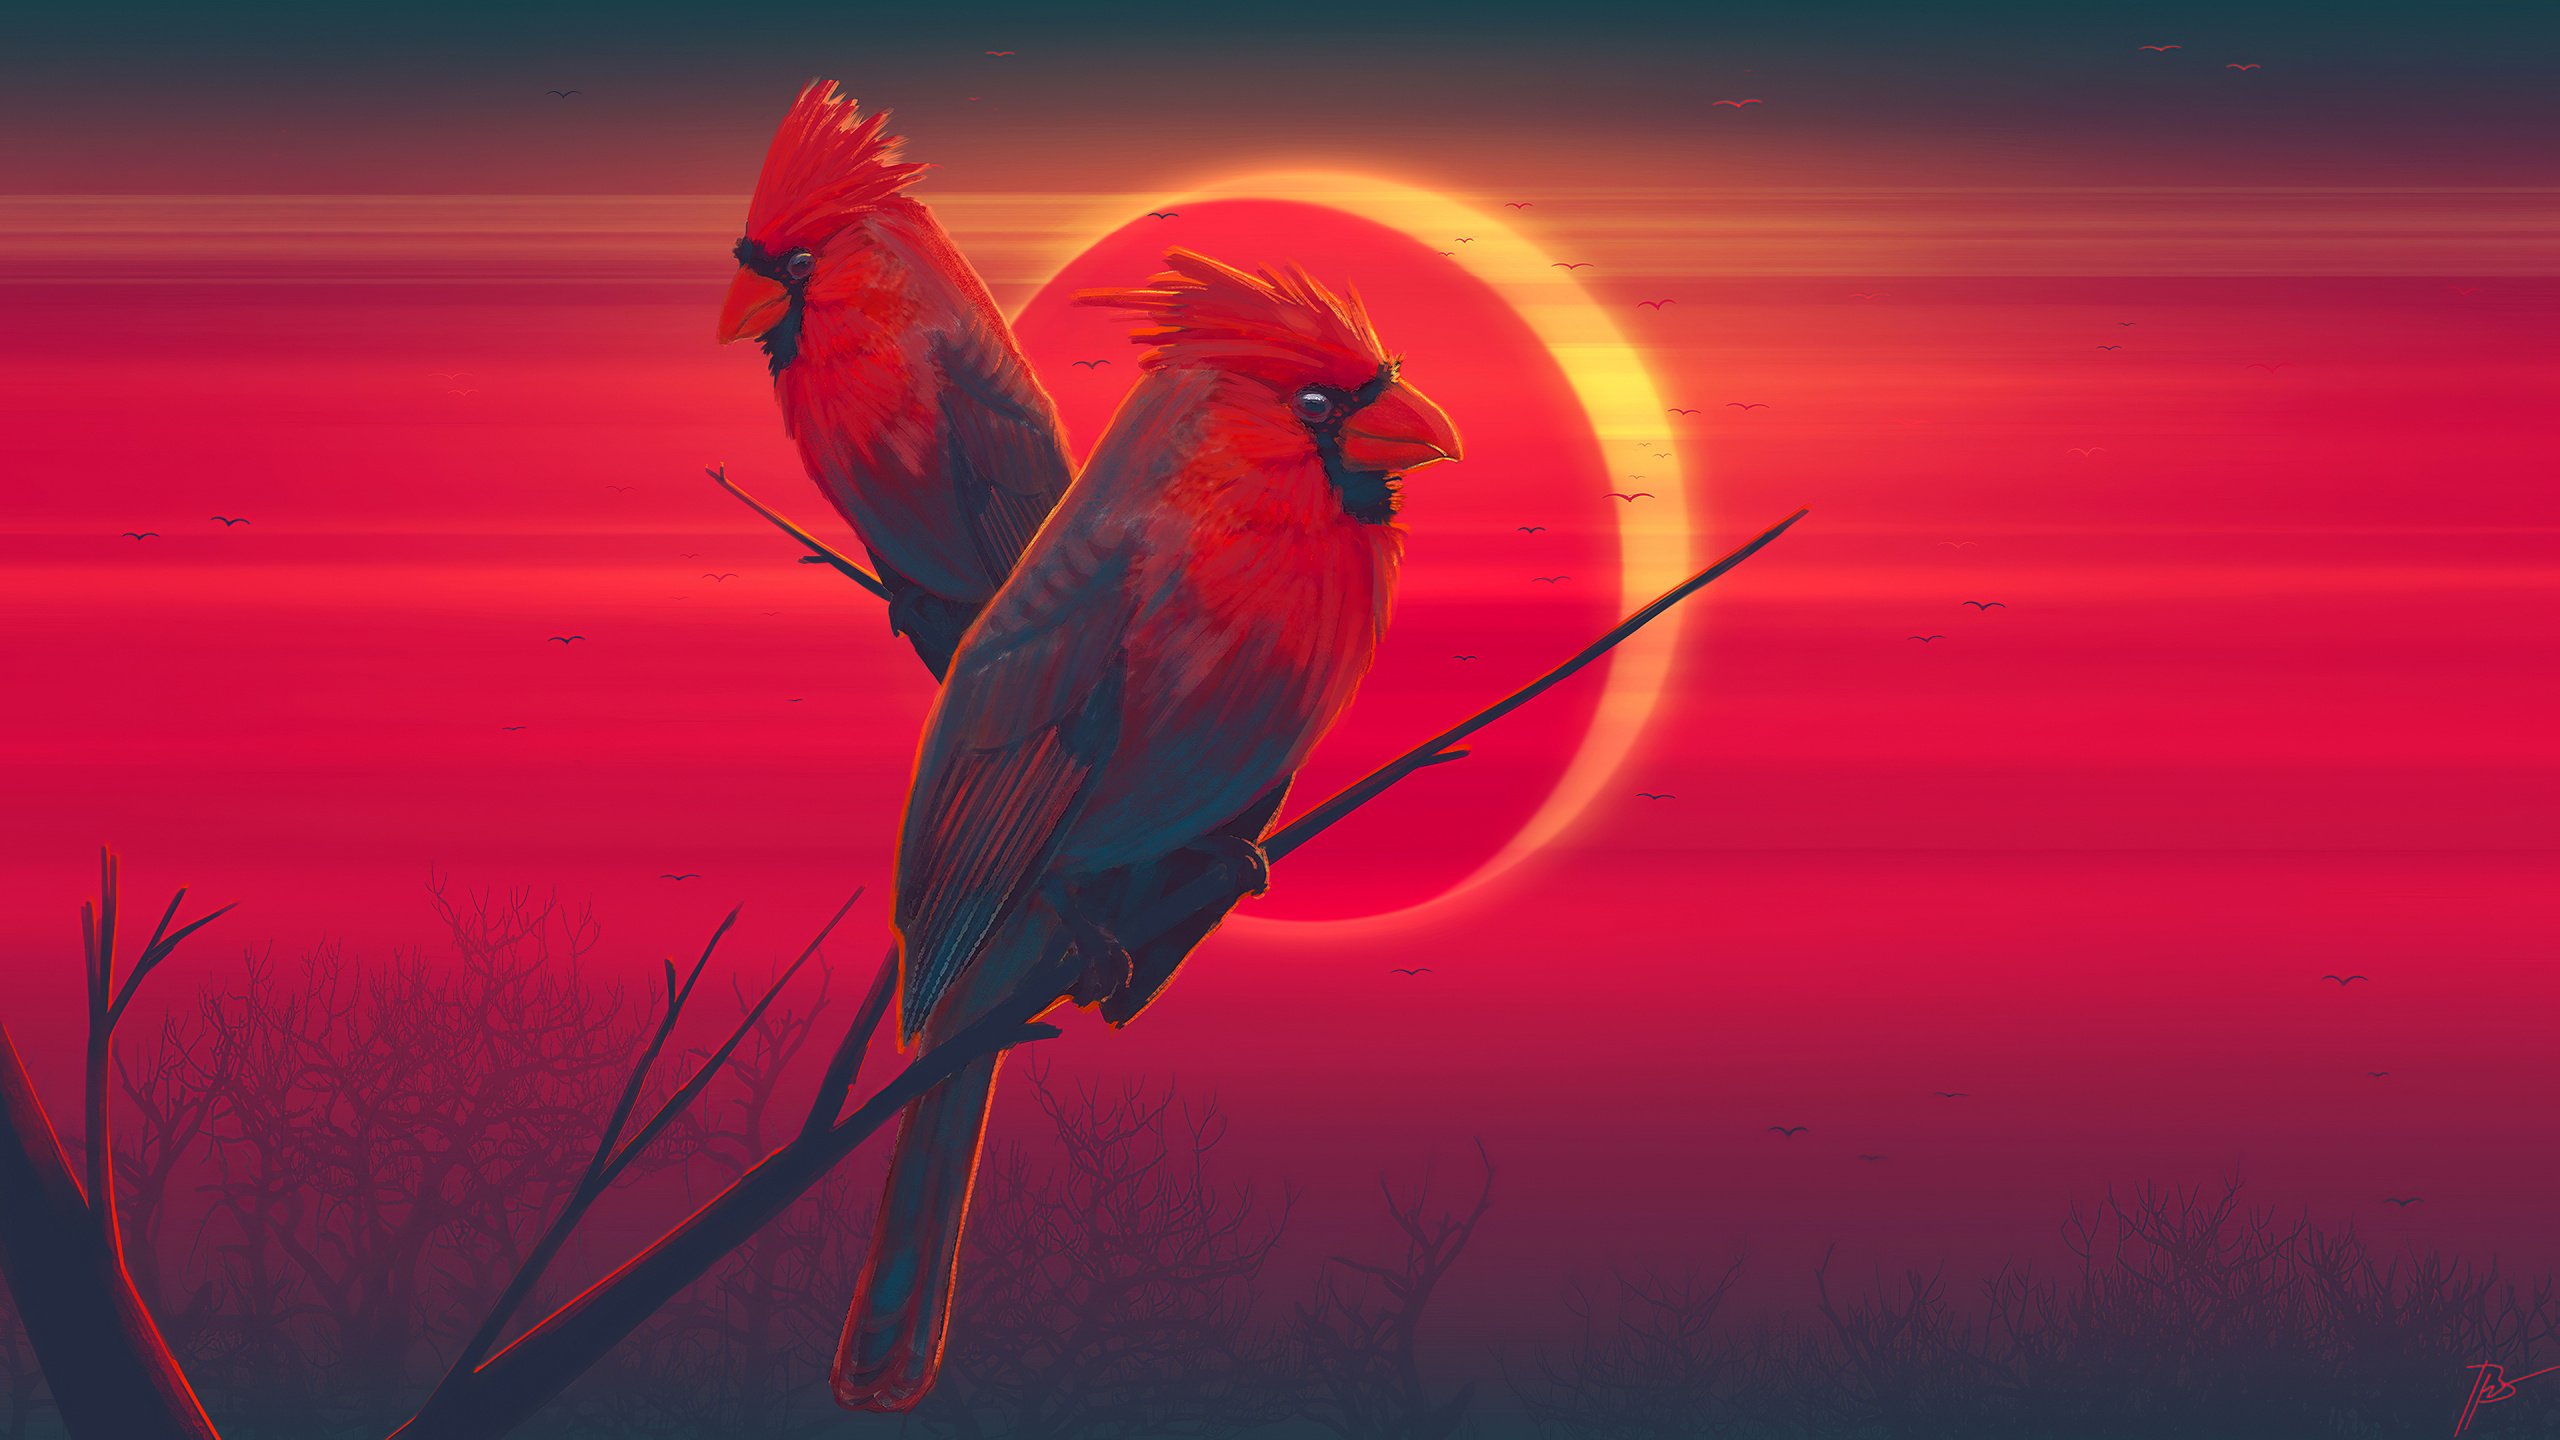 艺术, 红色的, 鸟, 野生动物, 金刚鹦鹉 壁纸 2560x1440 允许